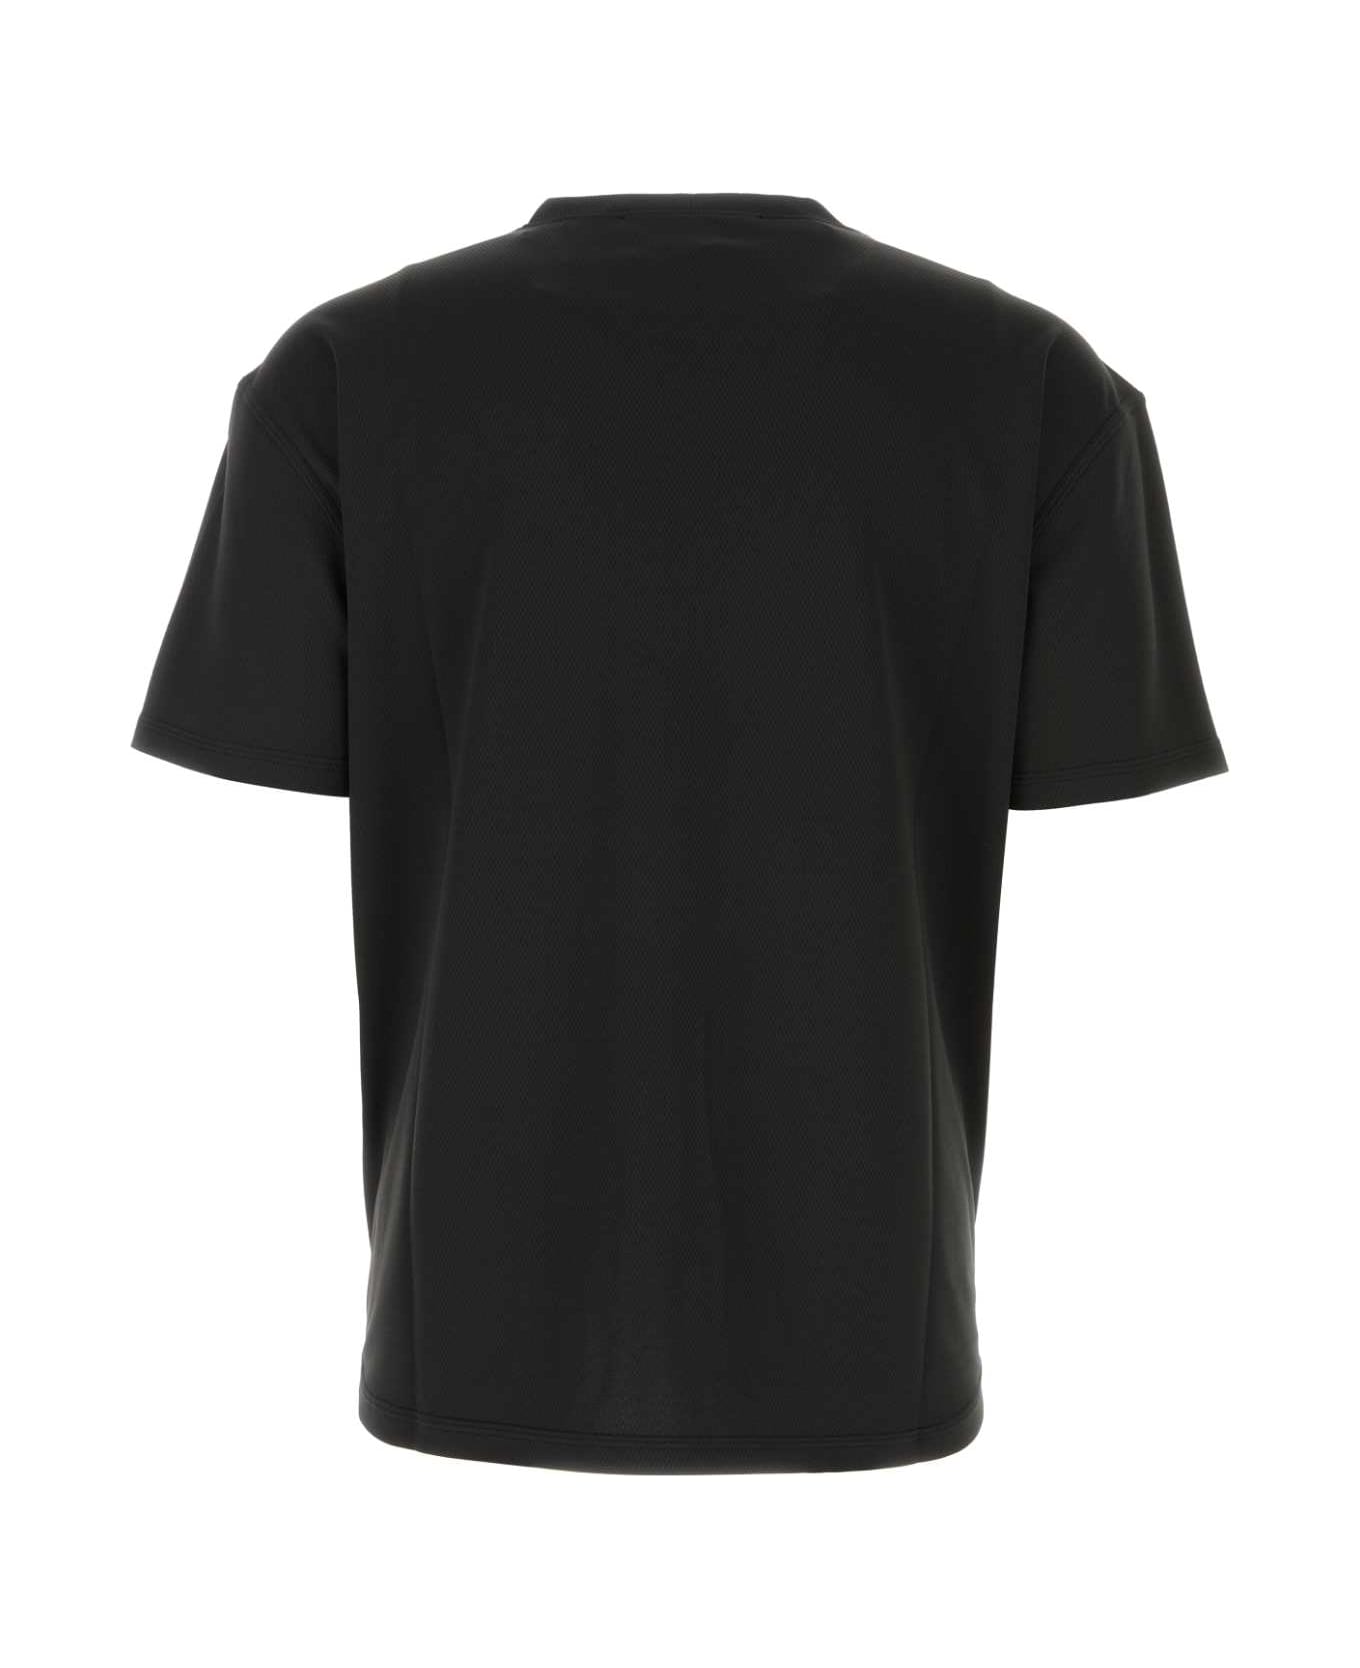 1017 ALYX 9SM Black Mesh T-shirt - BLACK